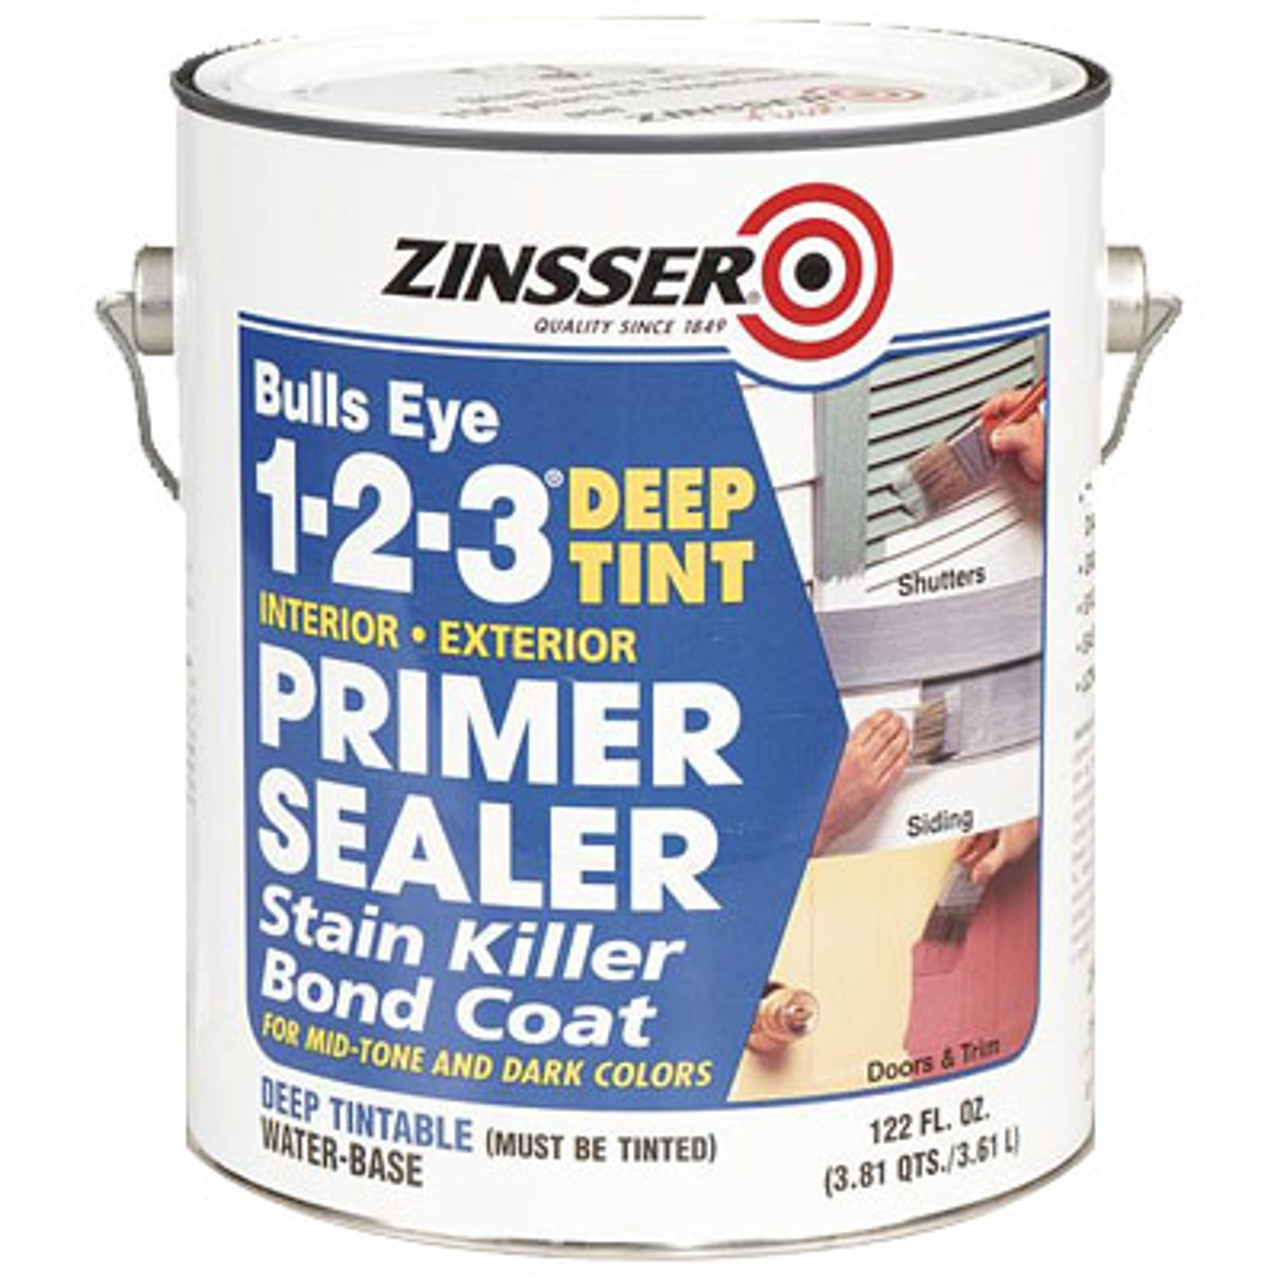 Zinsser Bulls Eye 1-2-3 Primer Sealer & Stain Killer - 1 gal can